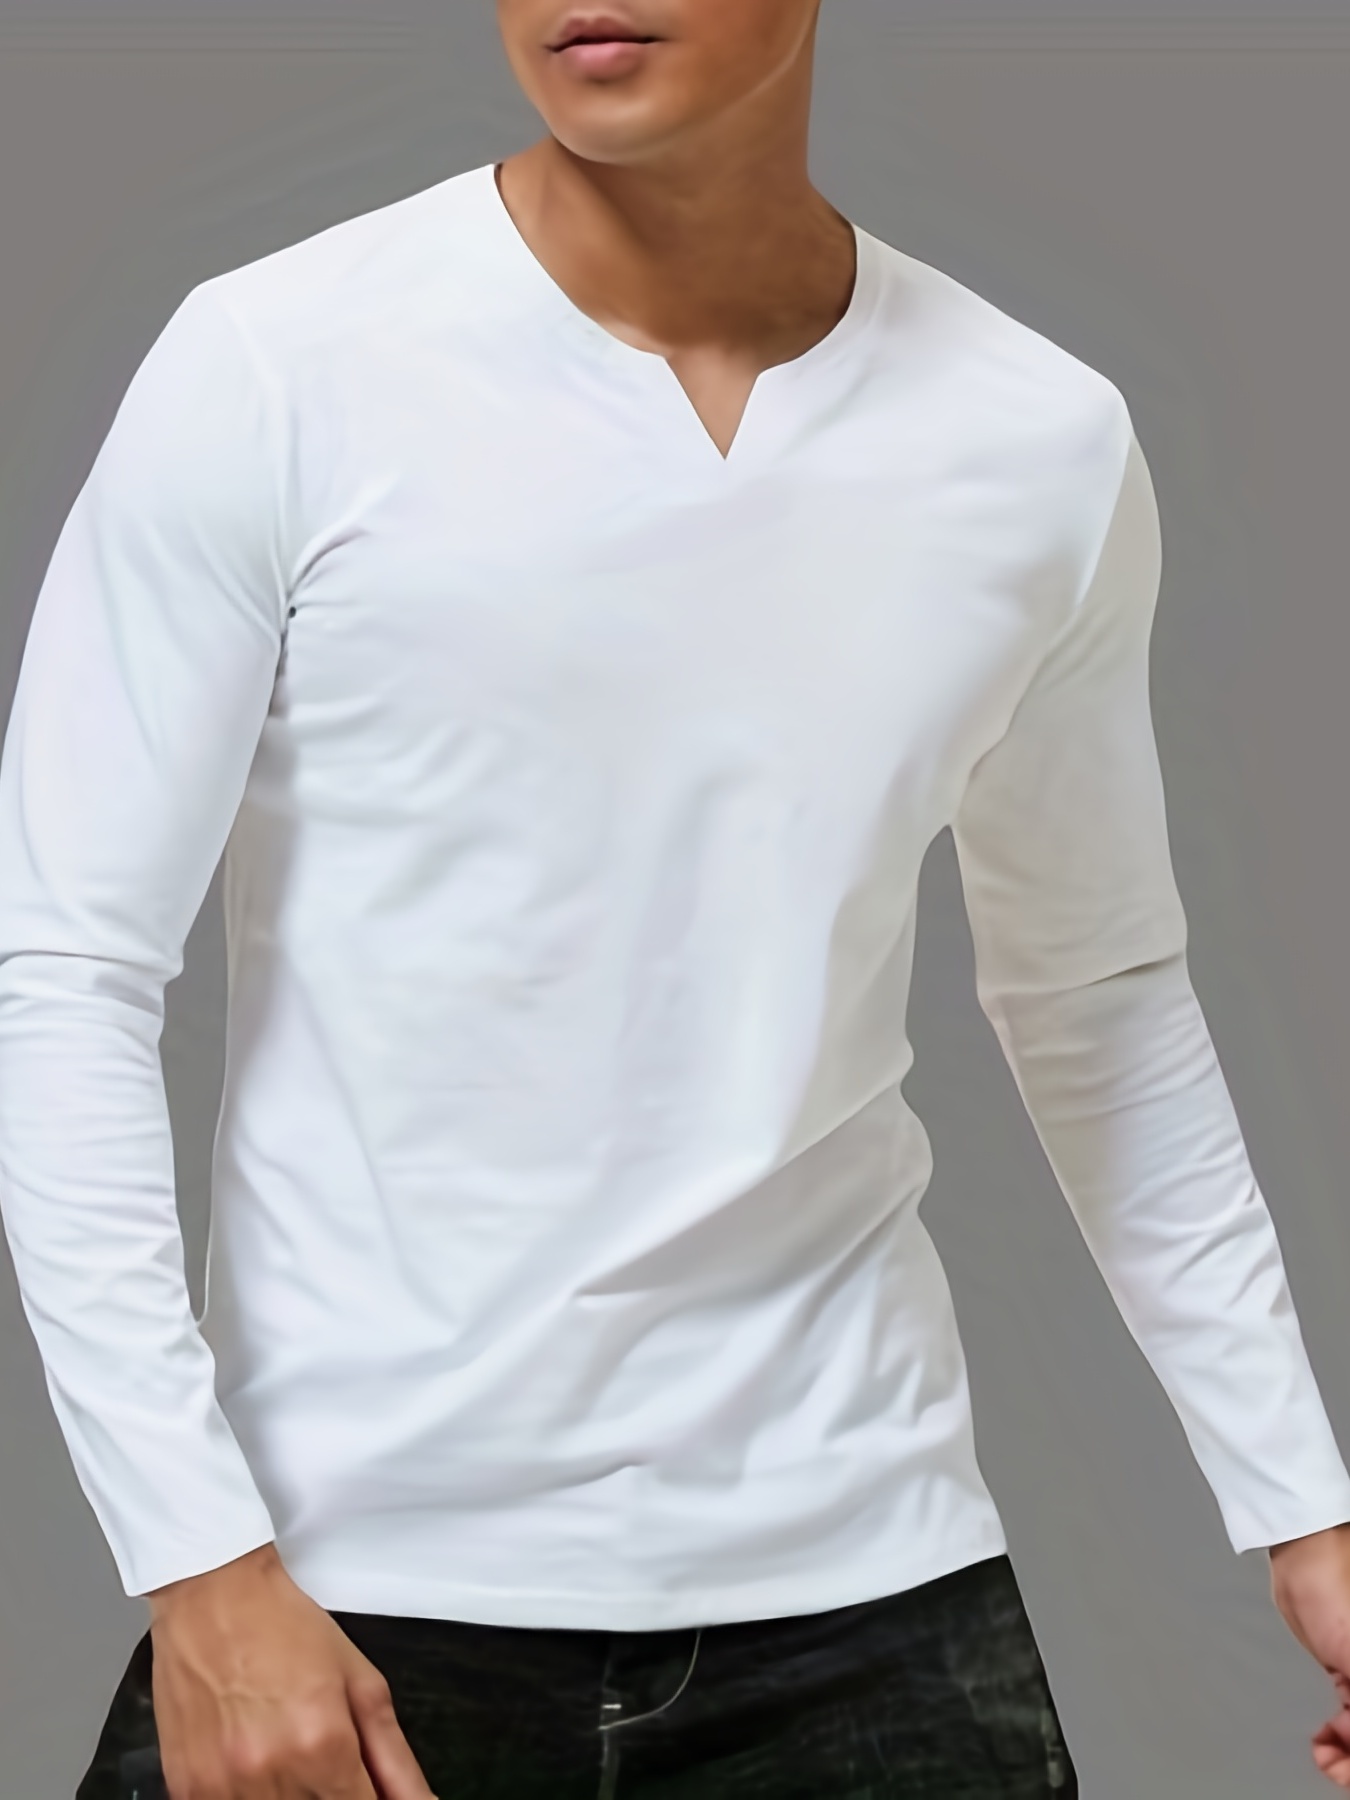 Camisetas Deportivas para Hombre  Entra y compra en Punto Blanco